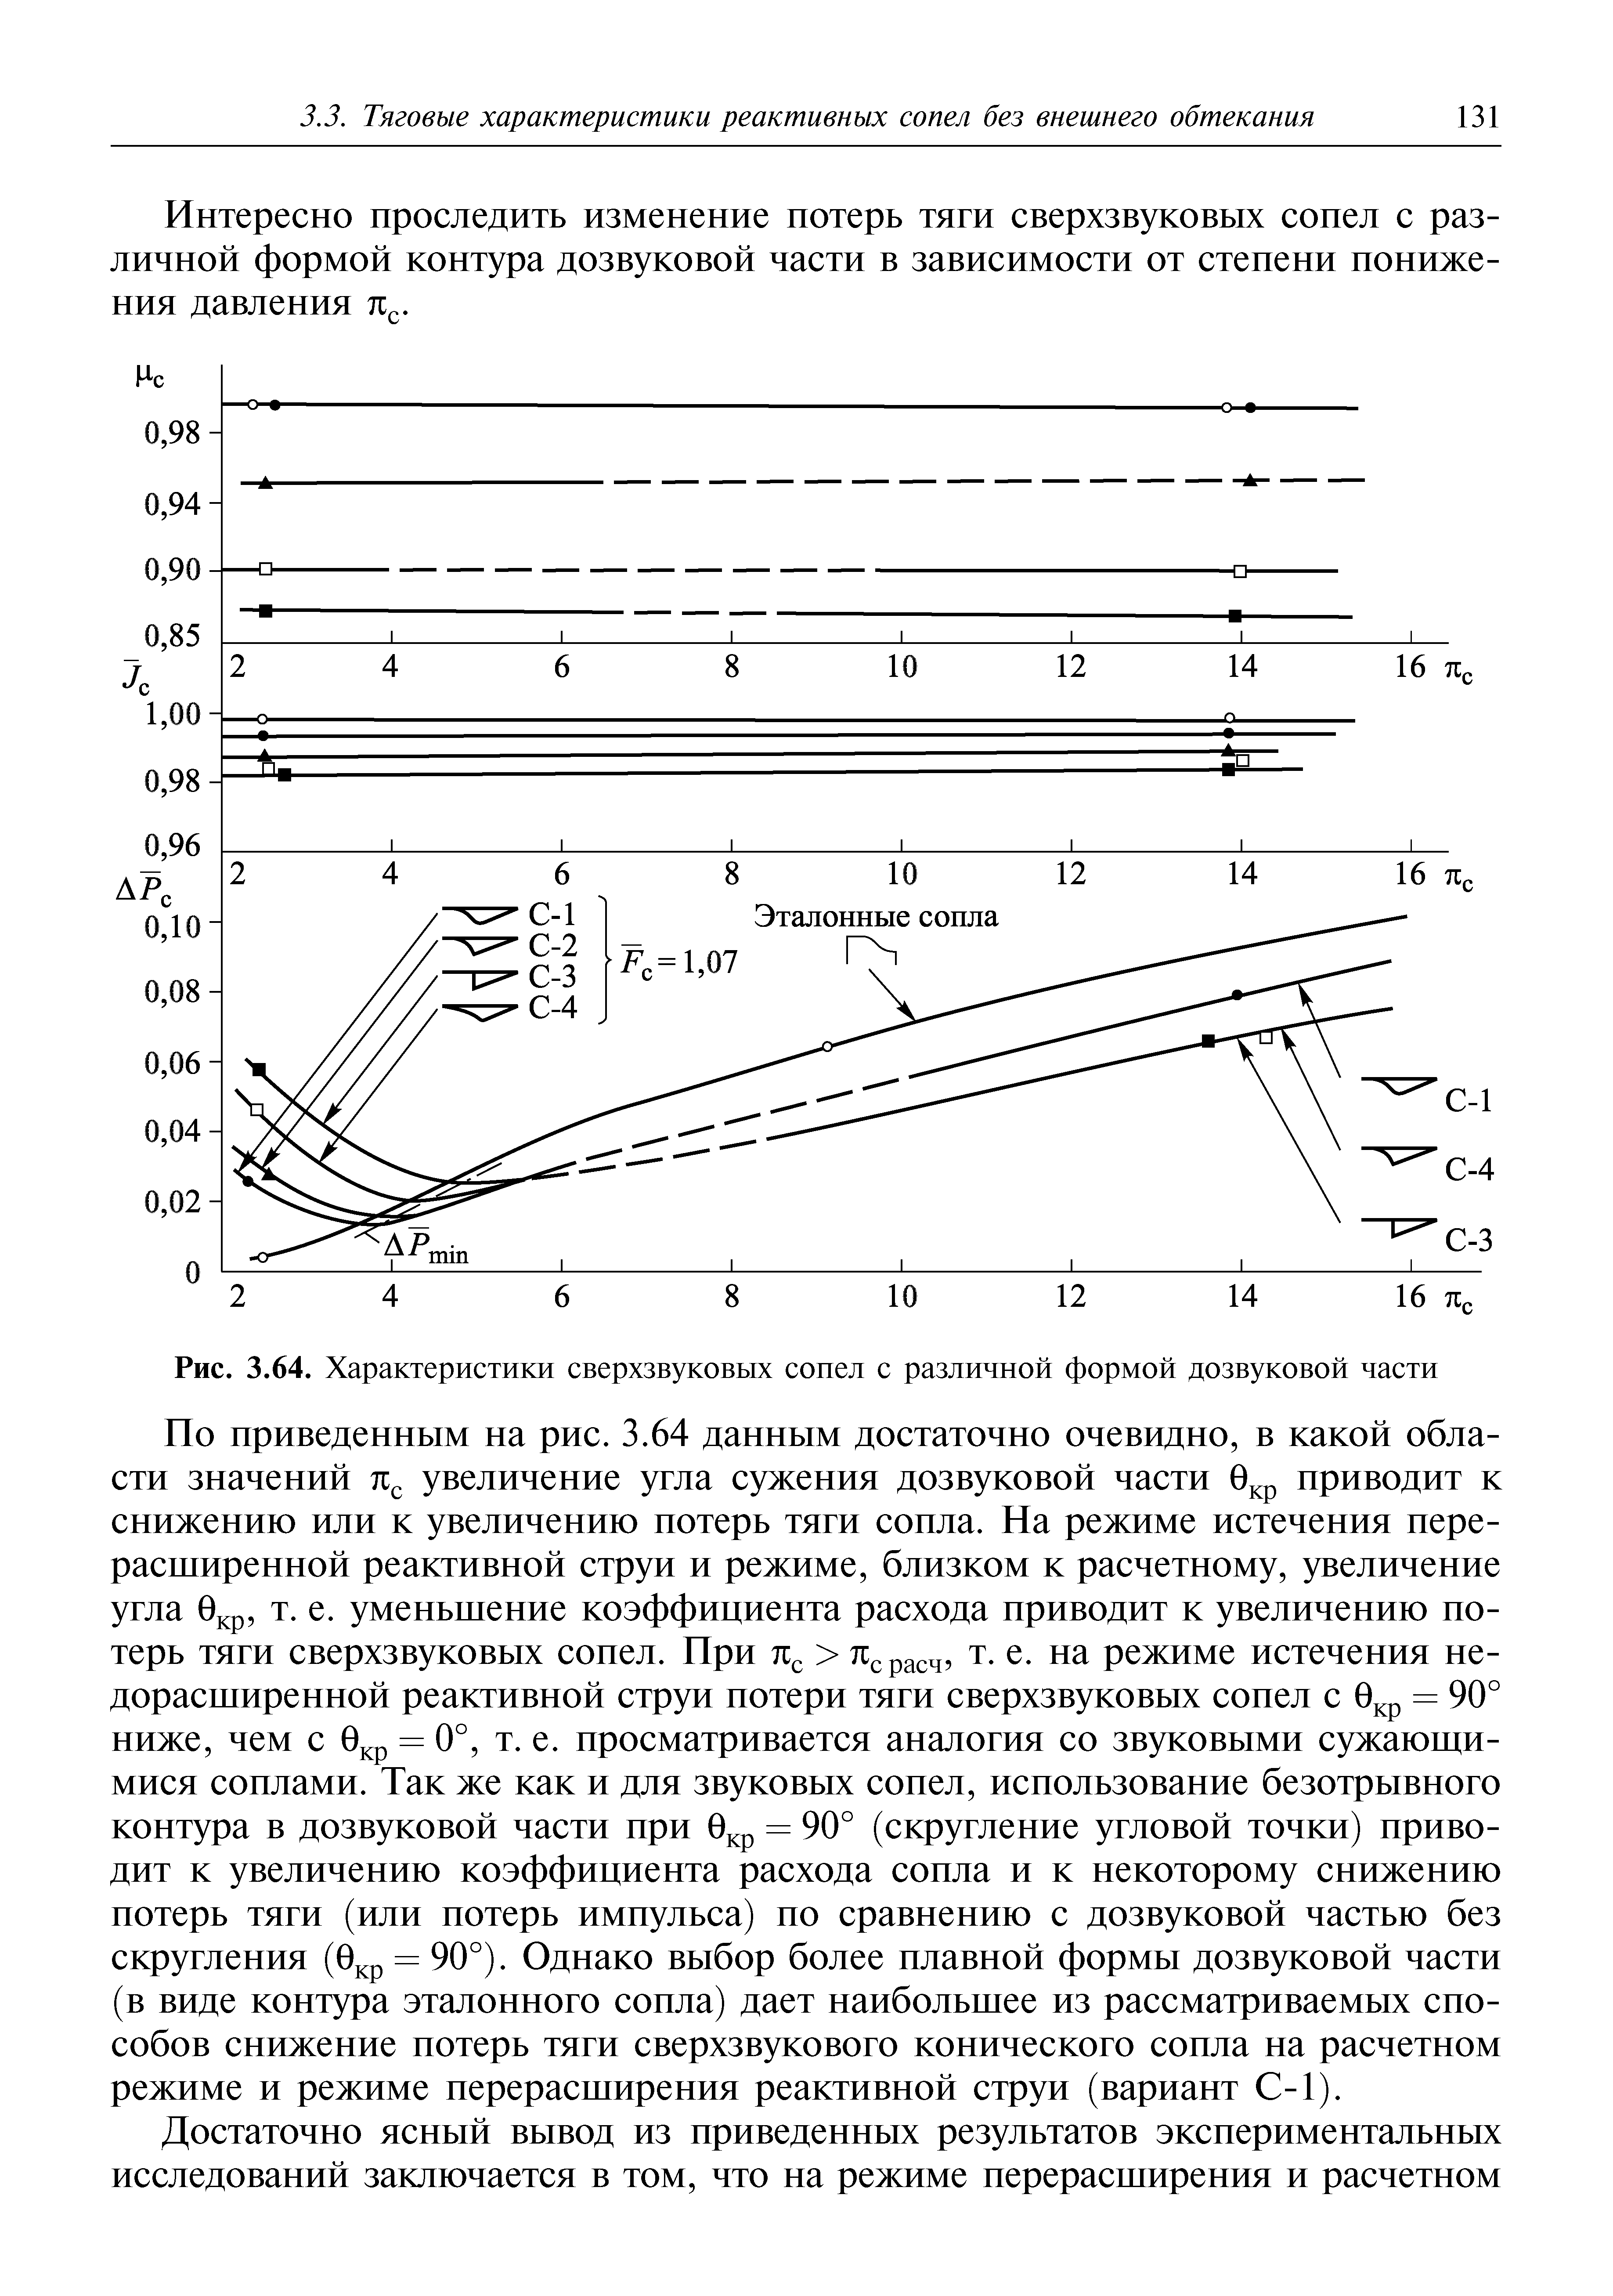 Рис. 3.64. Характеристики сверхзвуковых сопел с различной формой дозвуковой части
